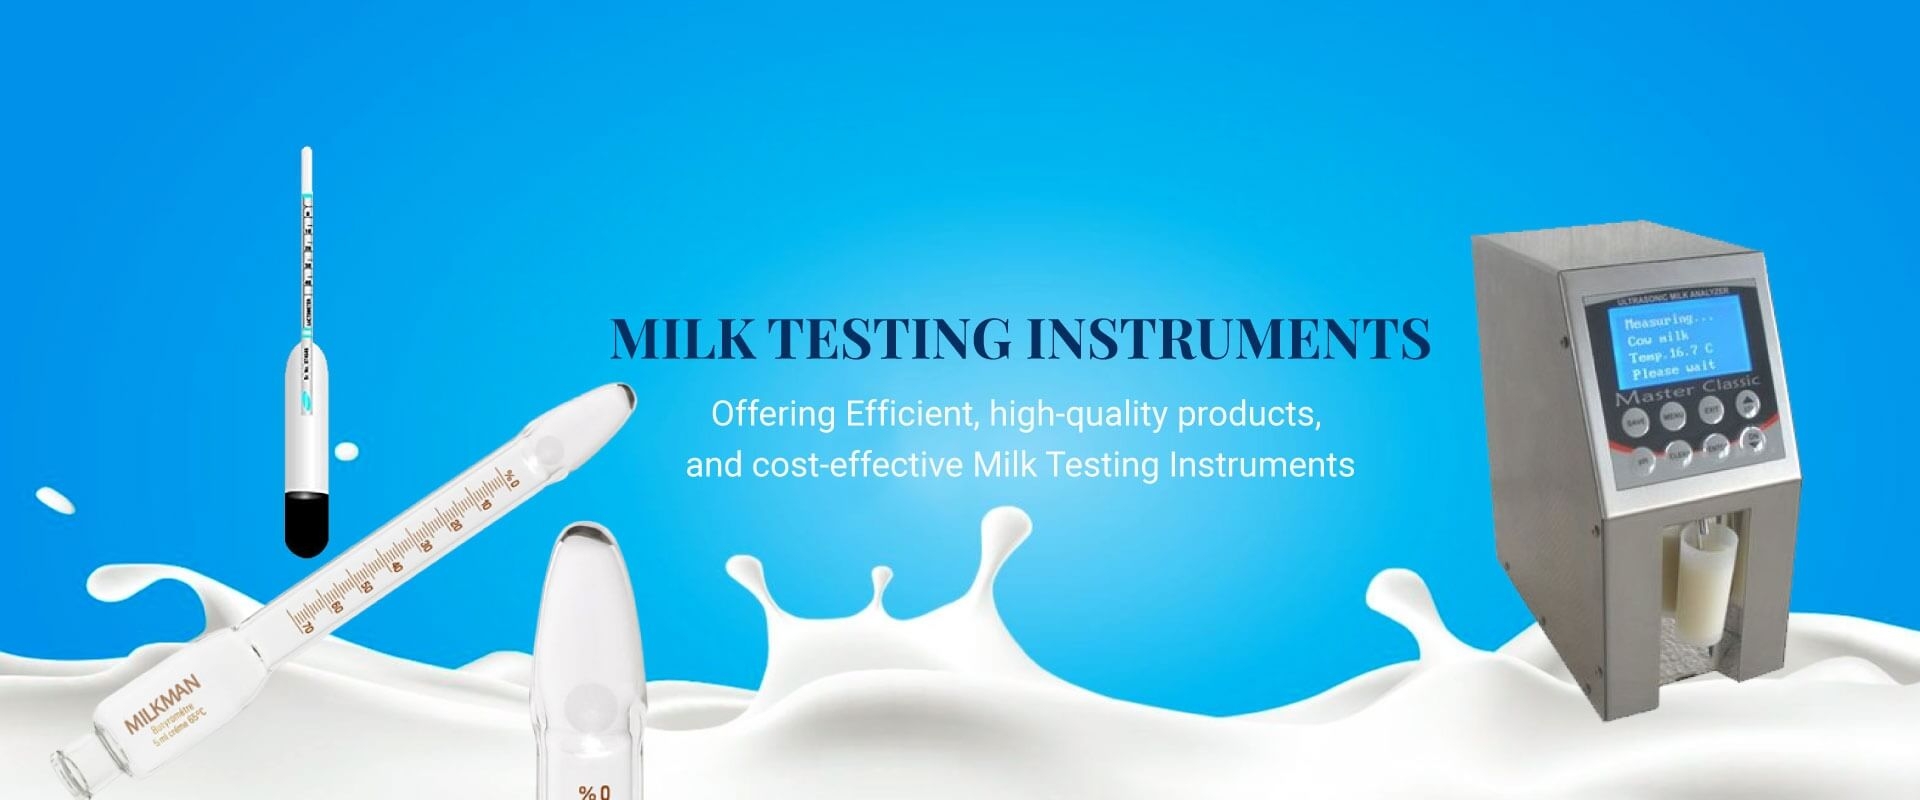 Milk Testing Instruments in Uzbekistan